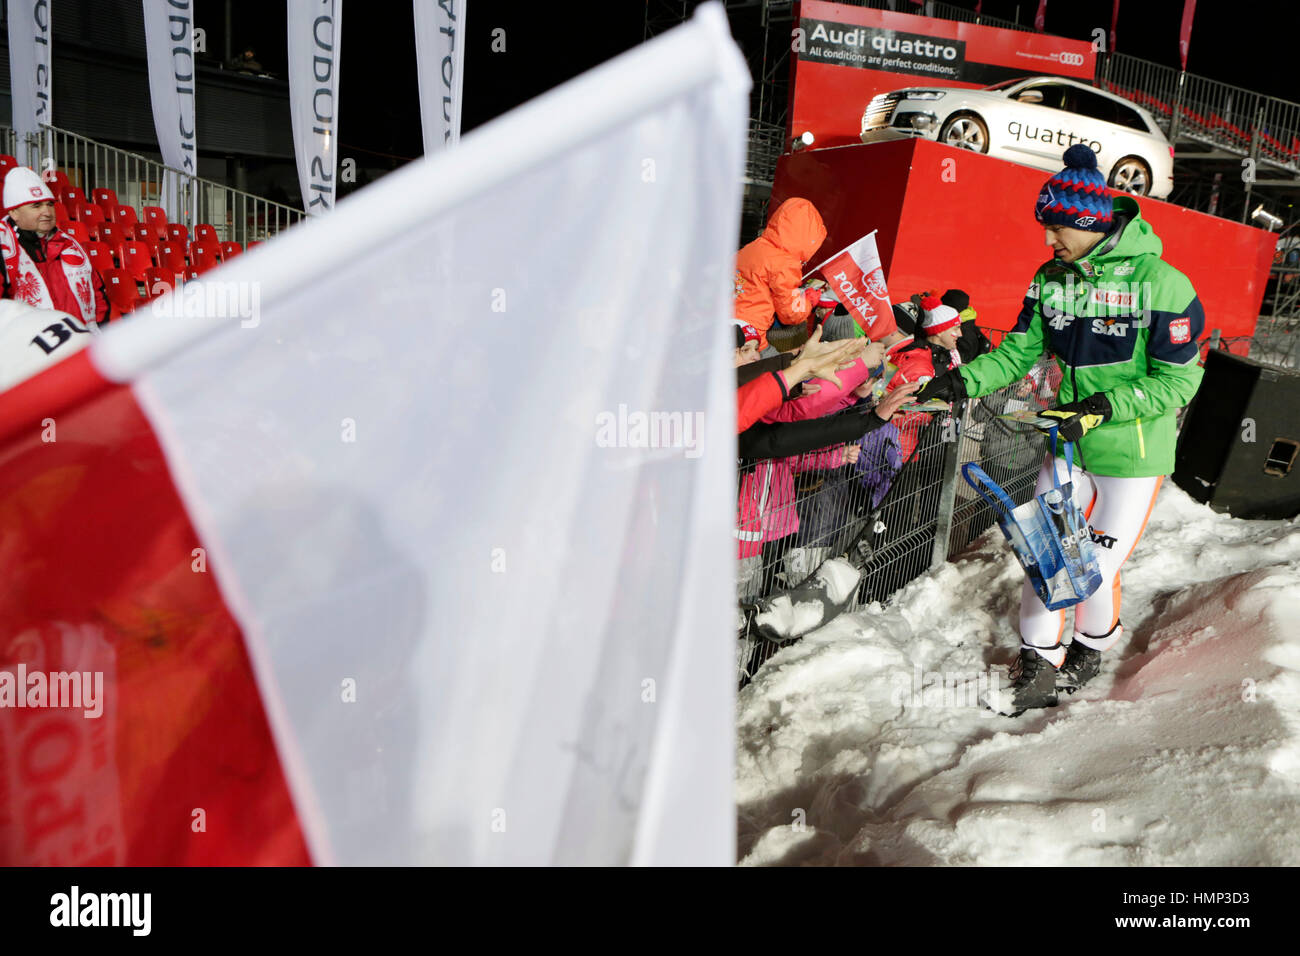 ZAKOPANE, POLAND - JANUARY 24, 2016: FIS Ski Jumping World Cup in Zakopane o/p KAMIL STOCH Stock Photo